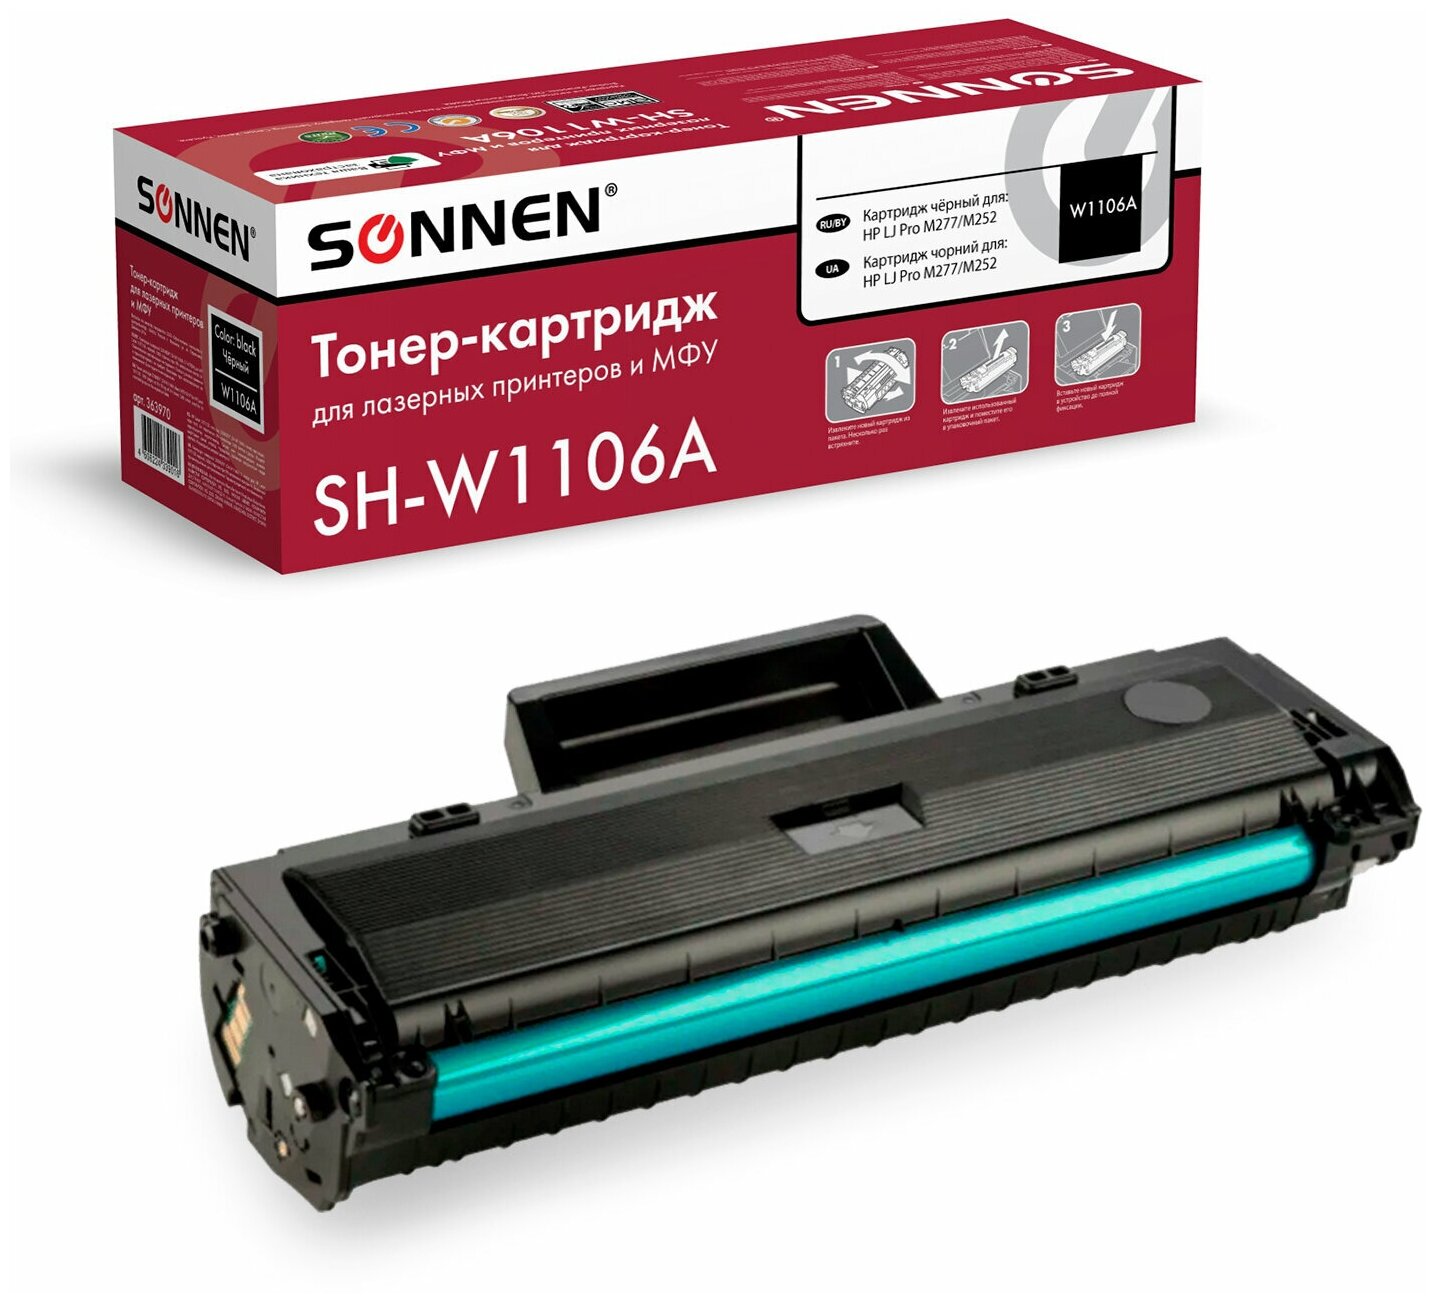 Картридж лазерный SONNEN (SH-W1106A) С чипом для HP Laser107/135 высшее качество, черный, 1000 страниц, 363970